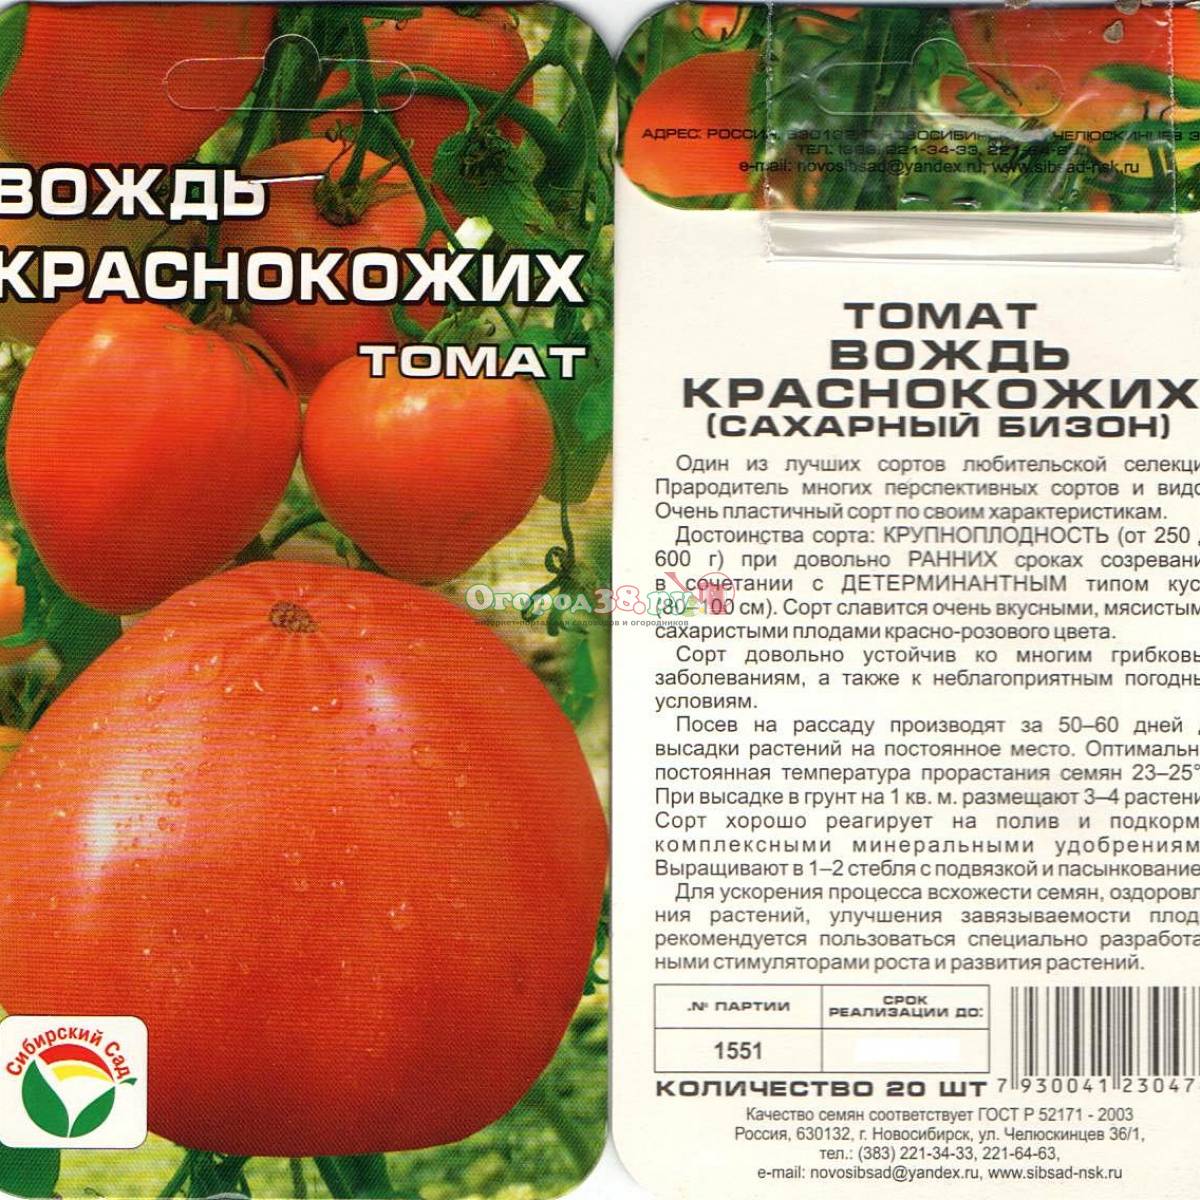 Неприхотливый сорт — томат иришка f1: подробное описание помидоров и советы по выращиванию